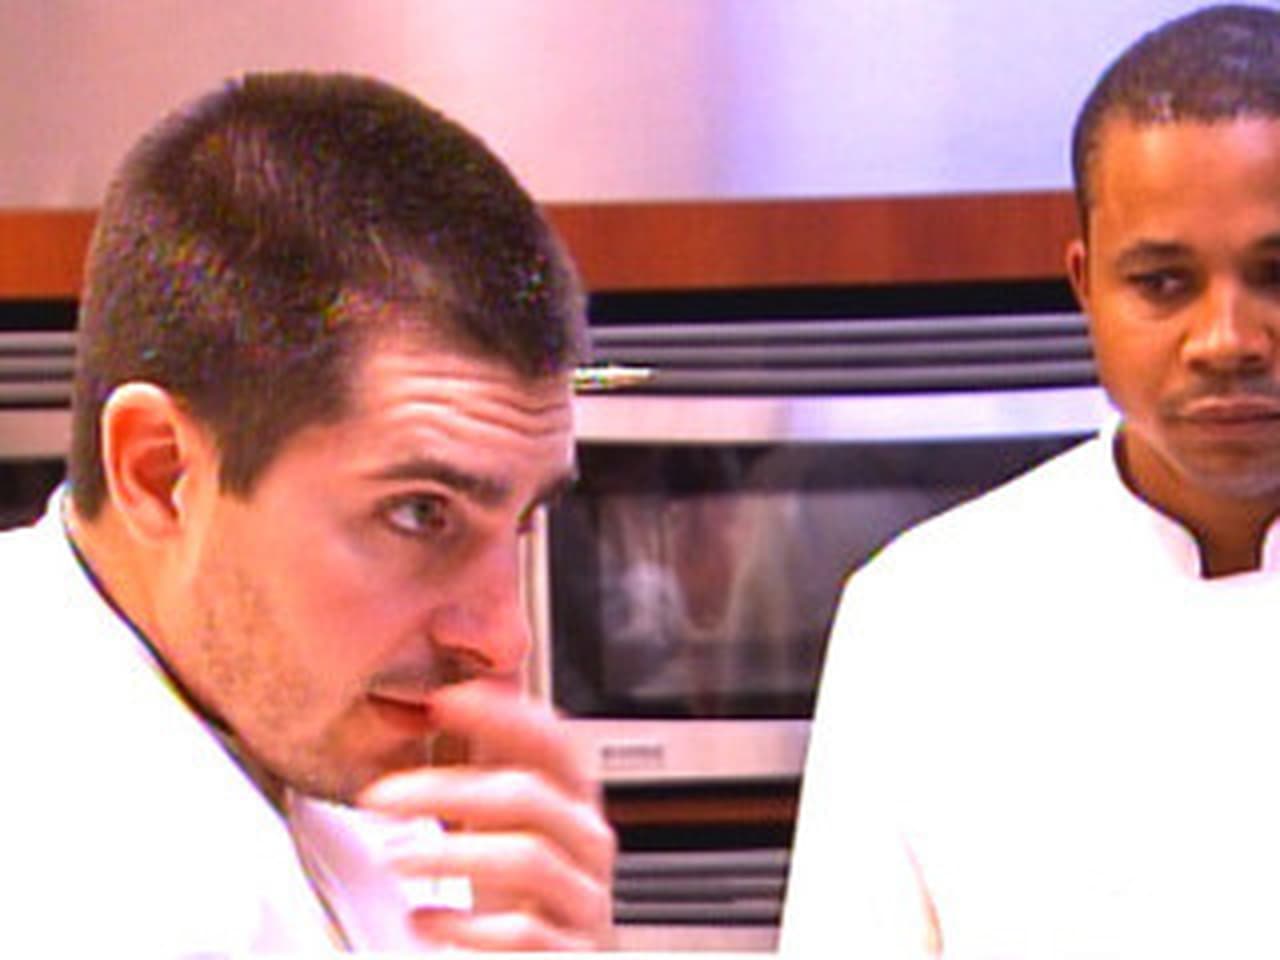 Top Chef - Season 1 Episode 3 : Nasty Delights